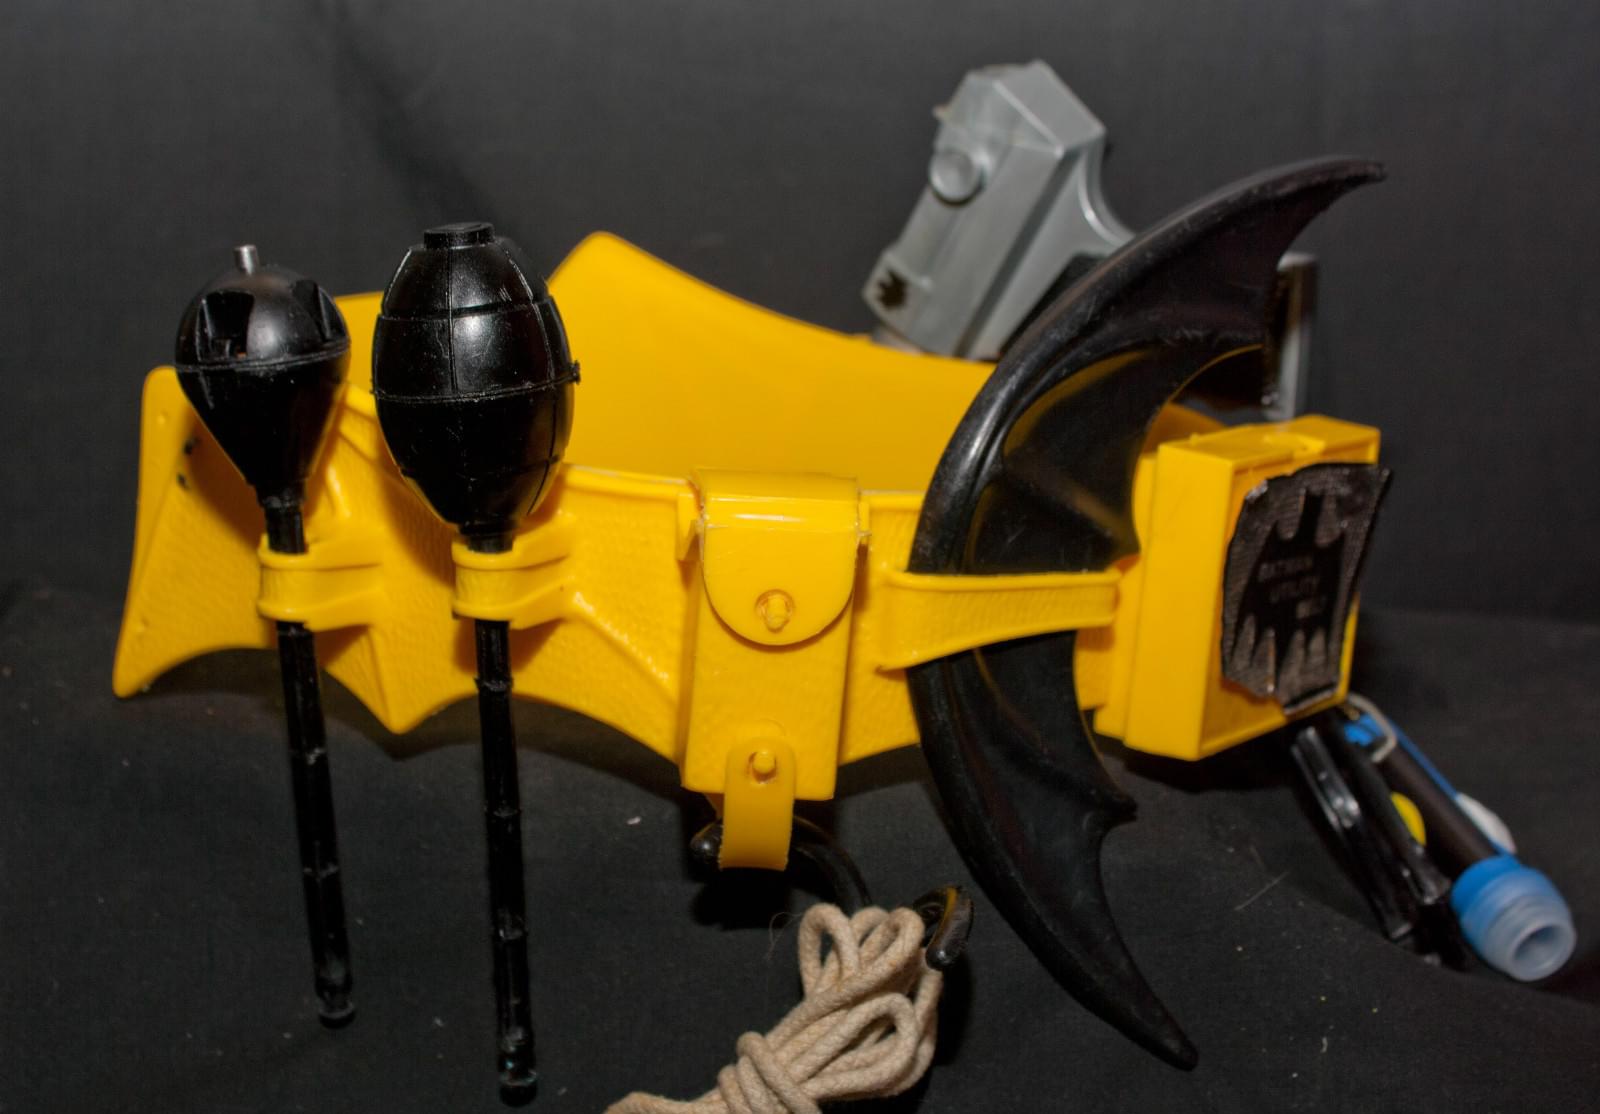 A toy Batman utility belt